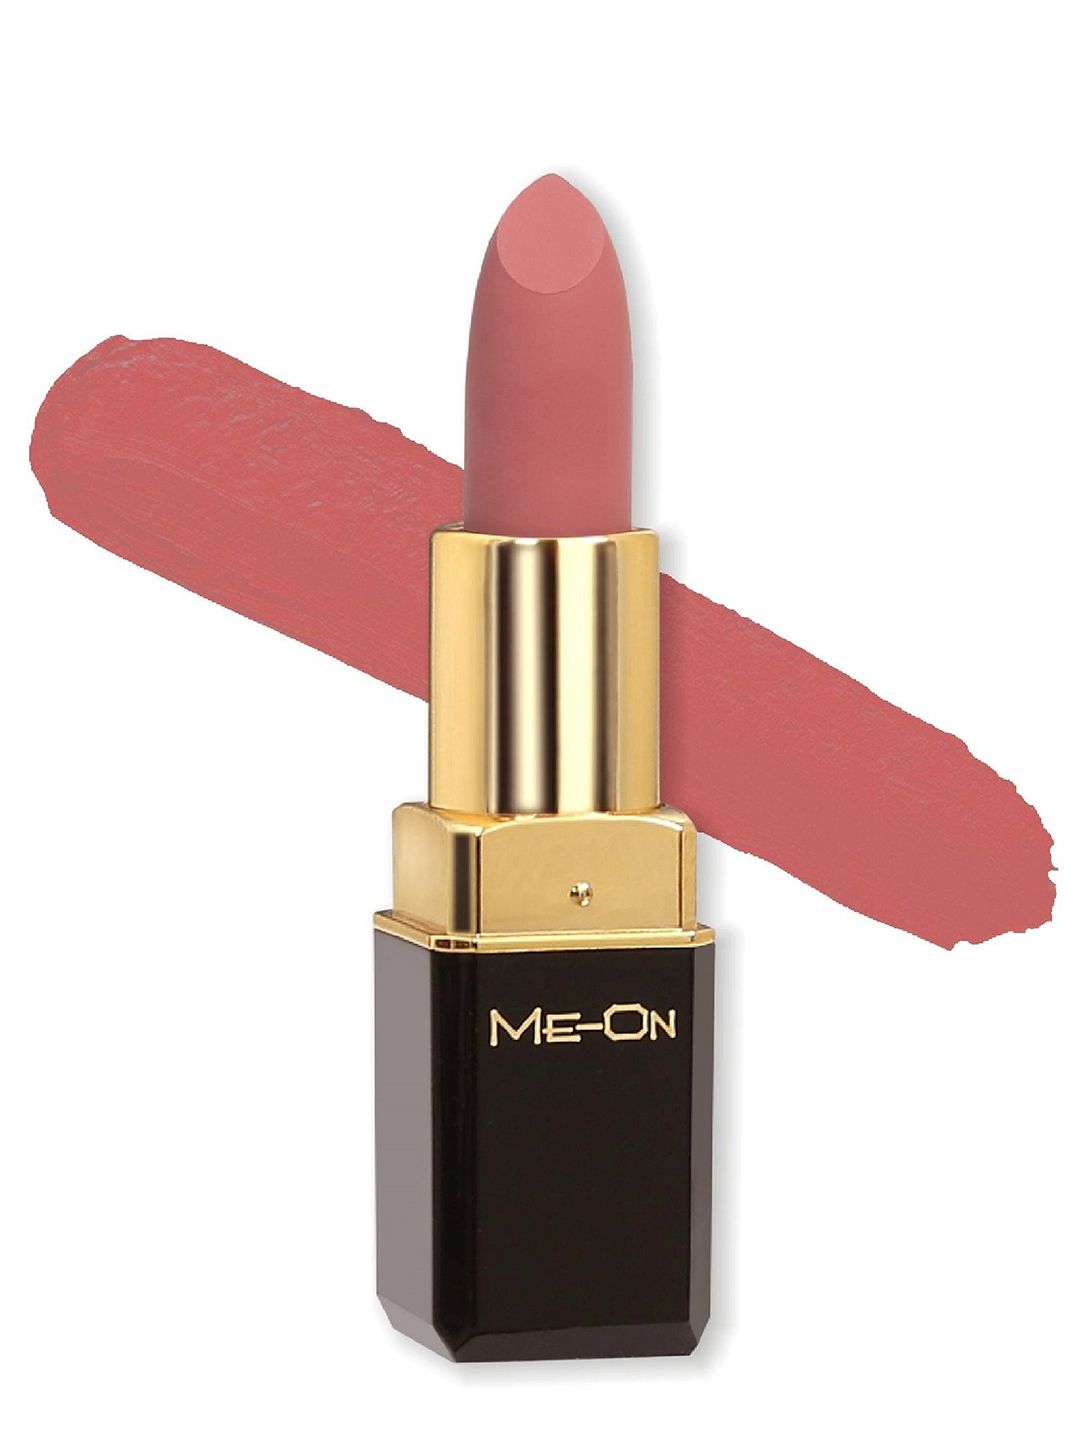 ME-ON Color Addict Matte Lipstick - Mauve Allure 17 Price in India